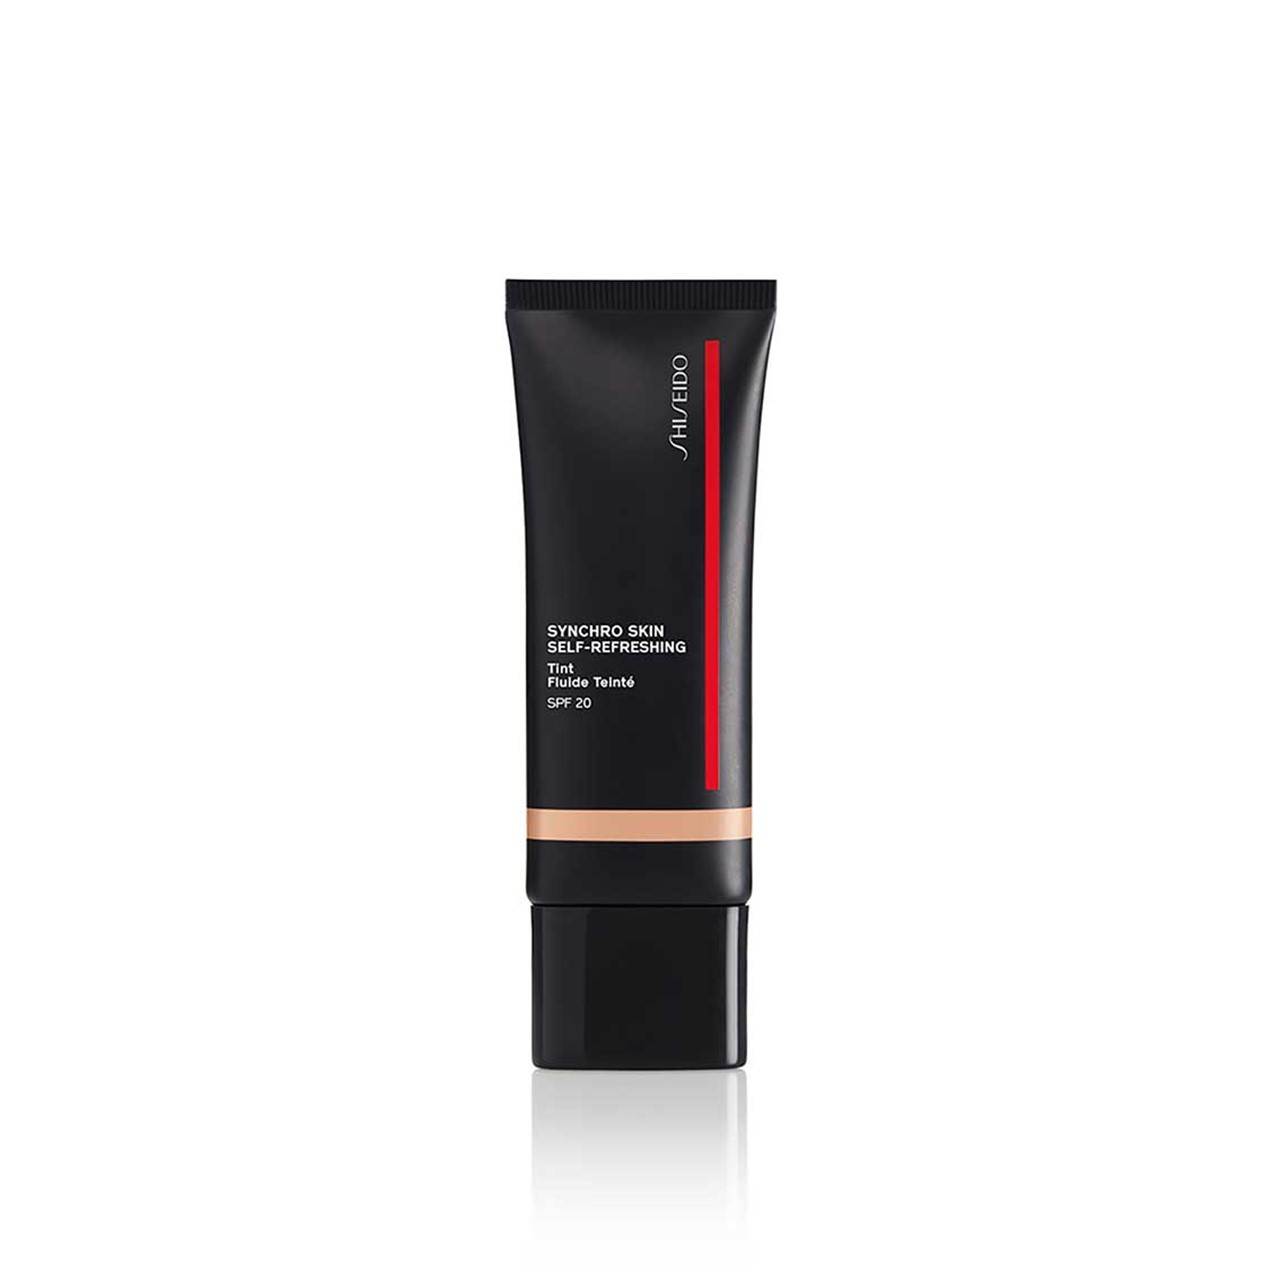 Shiseido Synchro Skin Self-Refreshing Tint SPF20 315 Medium Matsu 30ml (1.01fl oz)